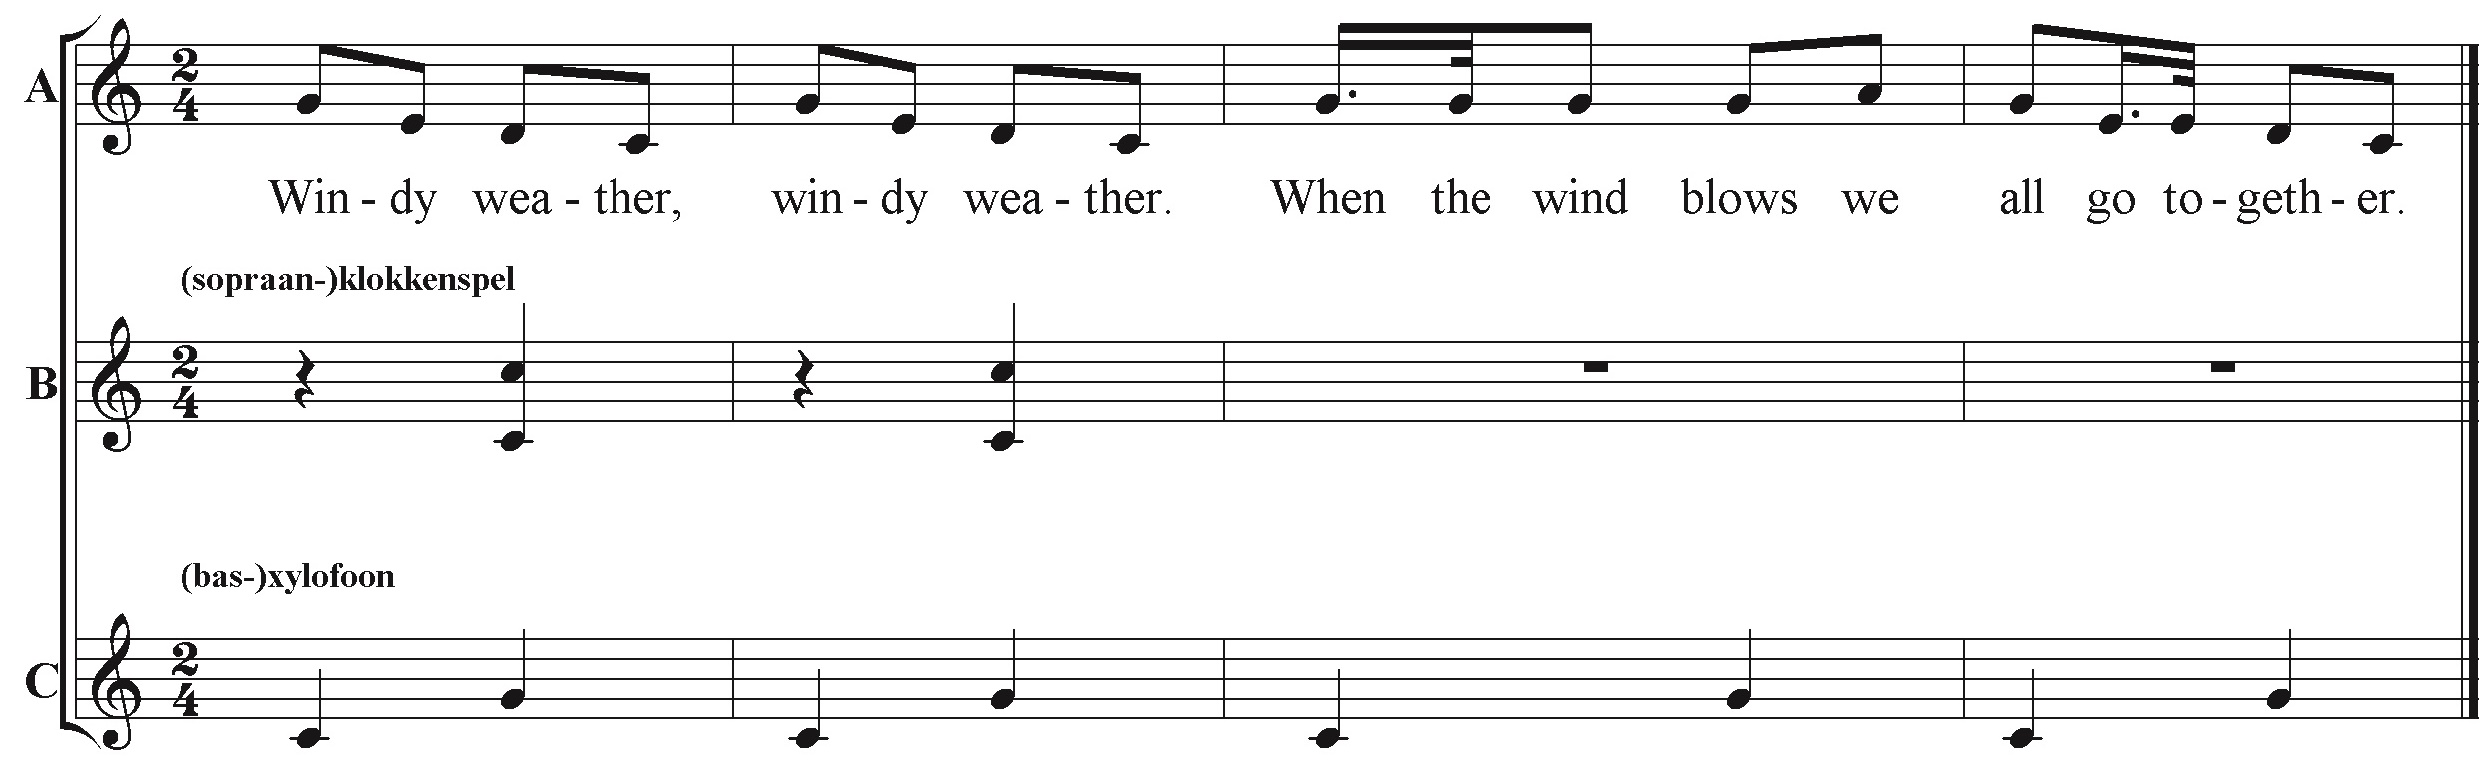 'Windy Weather', arrangement van het Amerikaanse volksliedje 'Frosty Weather'